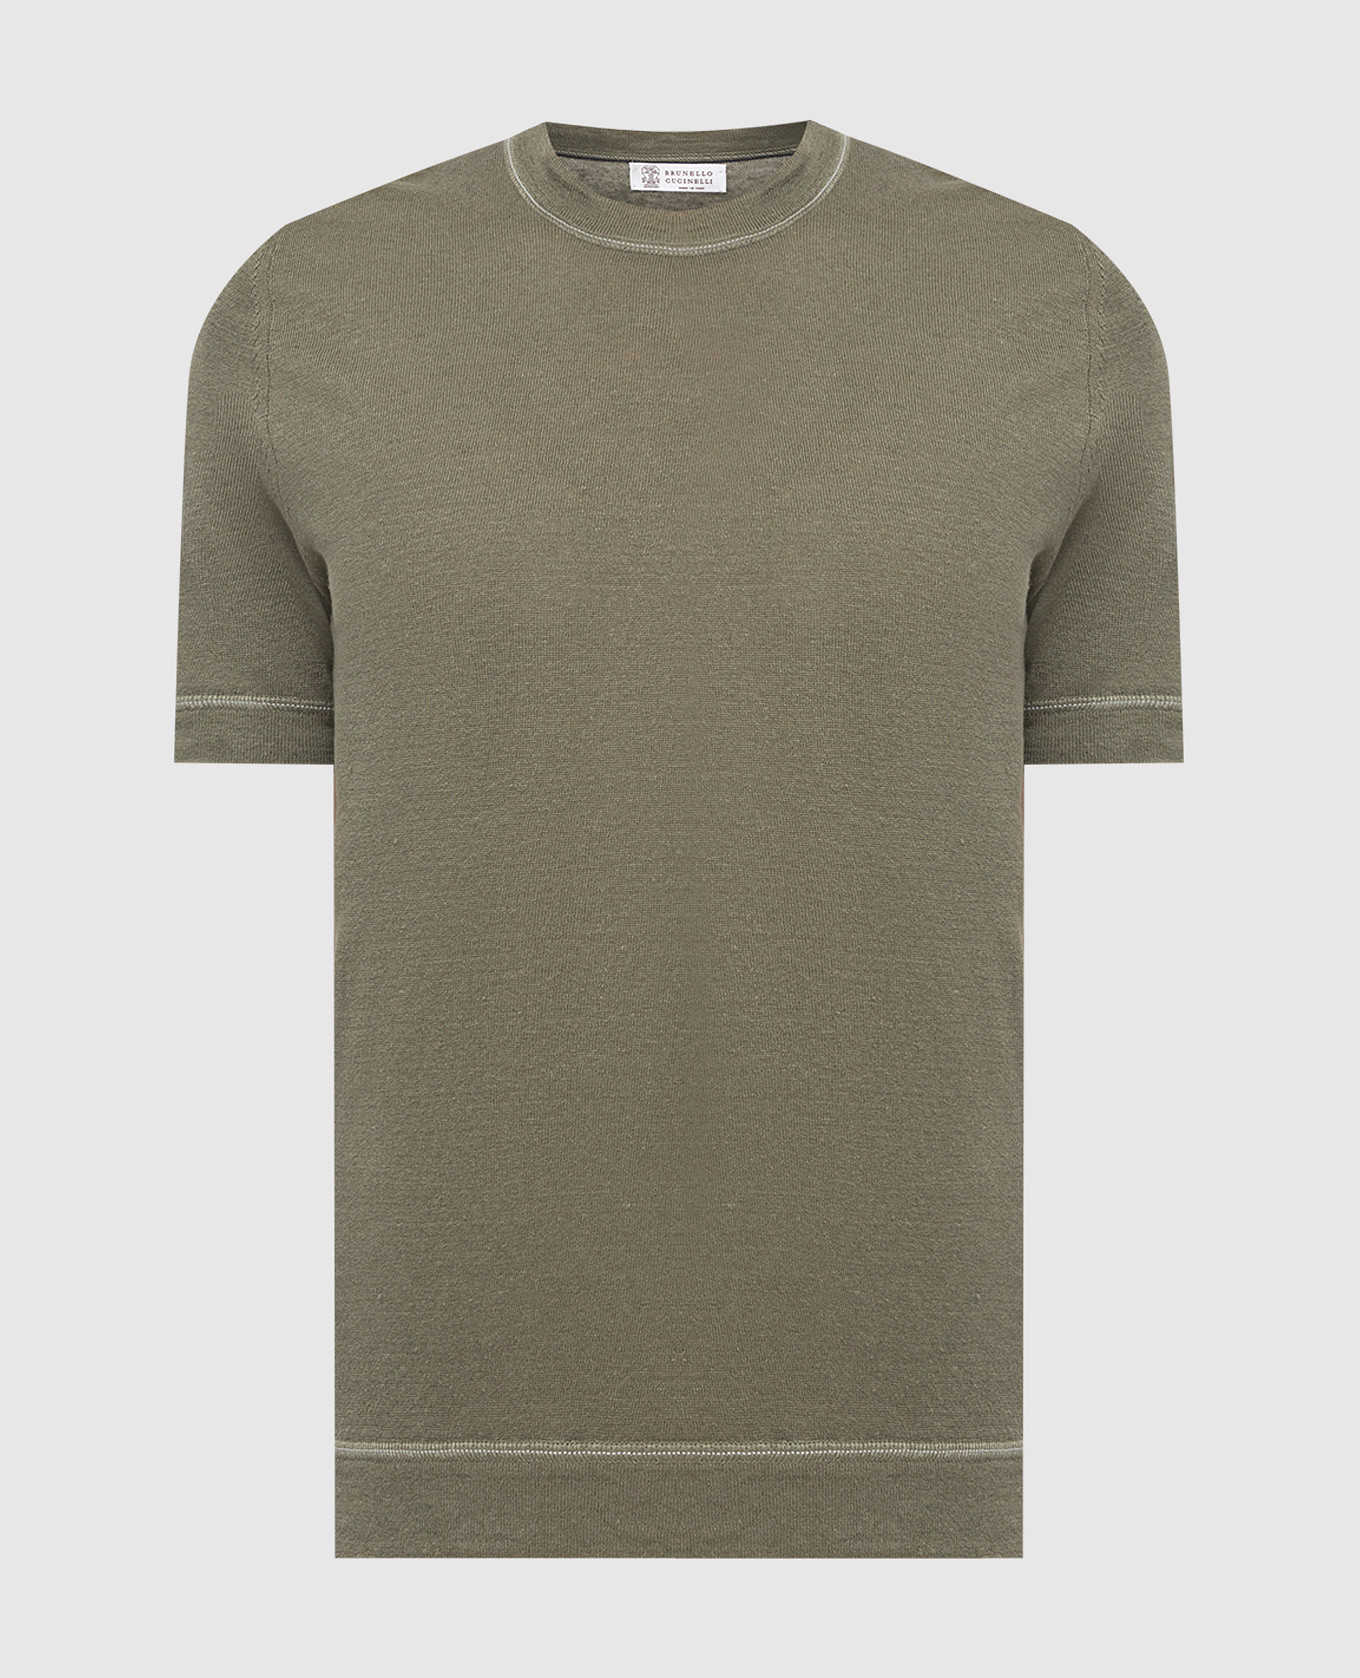 Green linen T-shirt